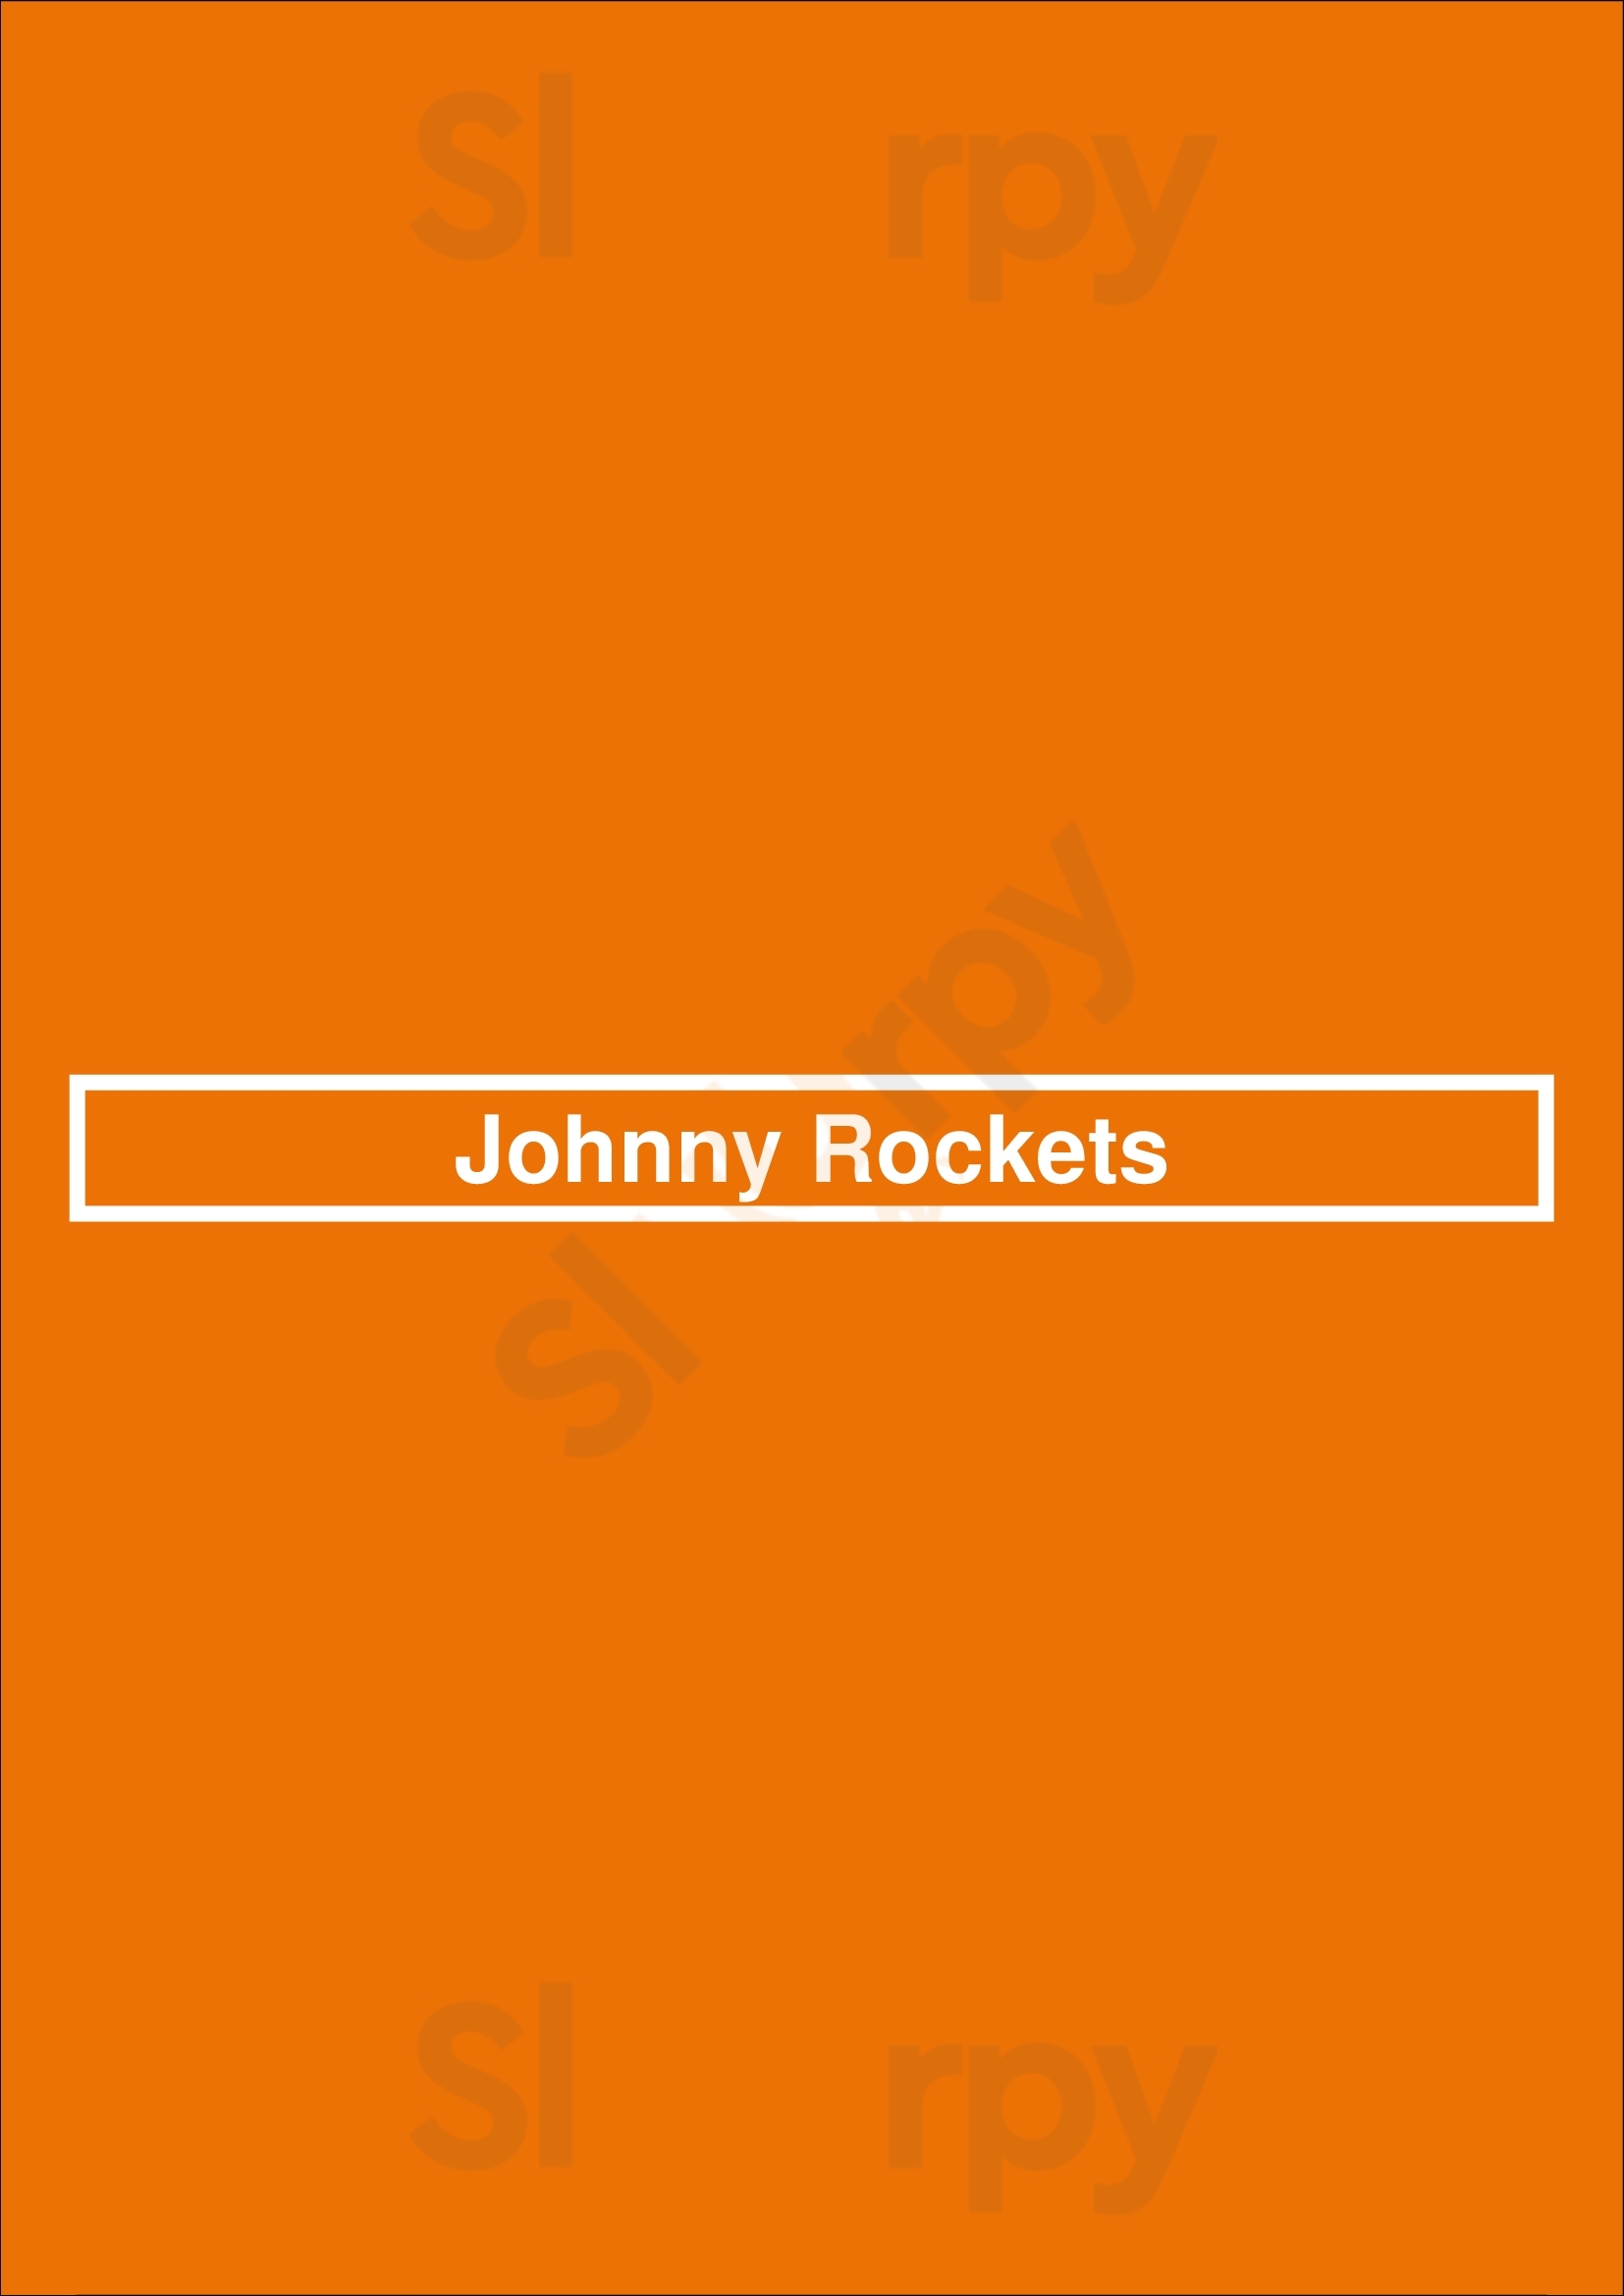 Johnny Rockets Vancouver Menu - 1